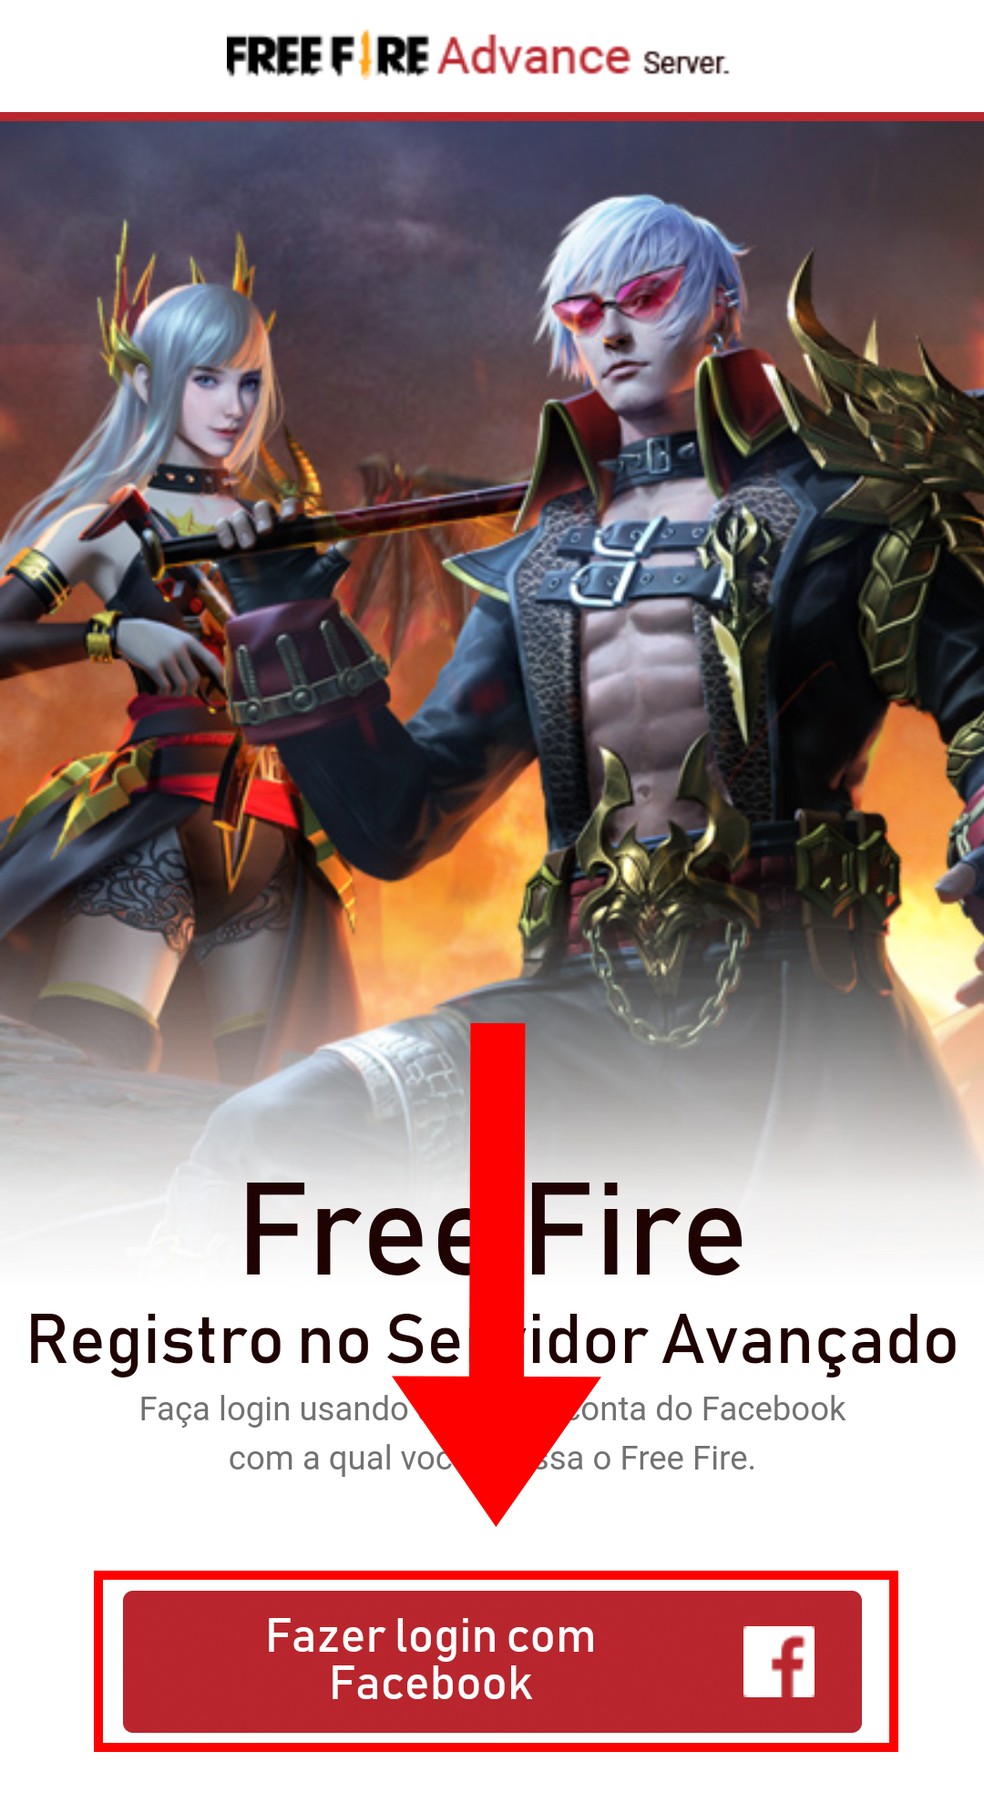 Free Fire: como se inscrever no Servidor Avançado de novembro, free fire